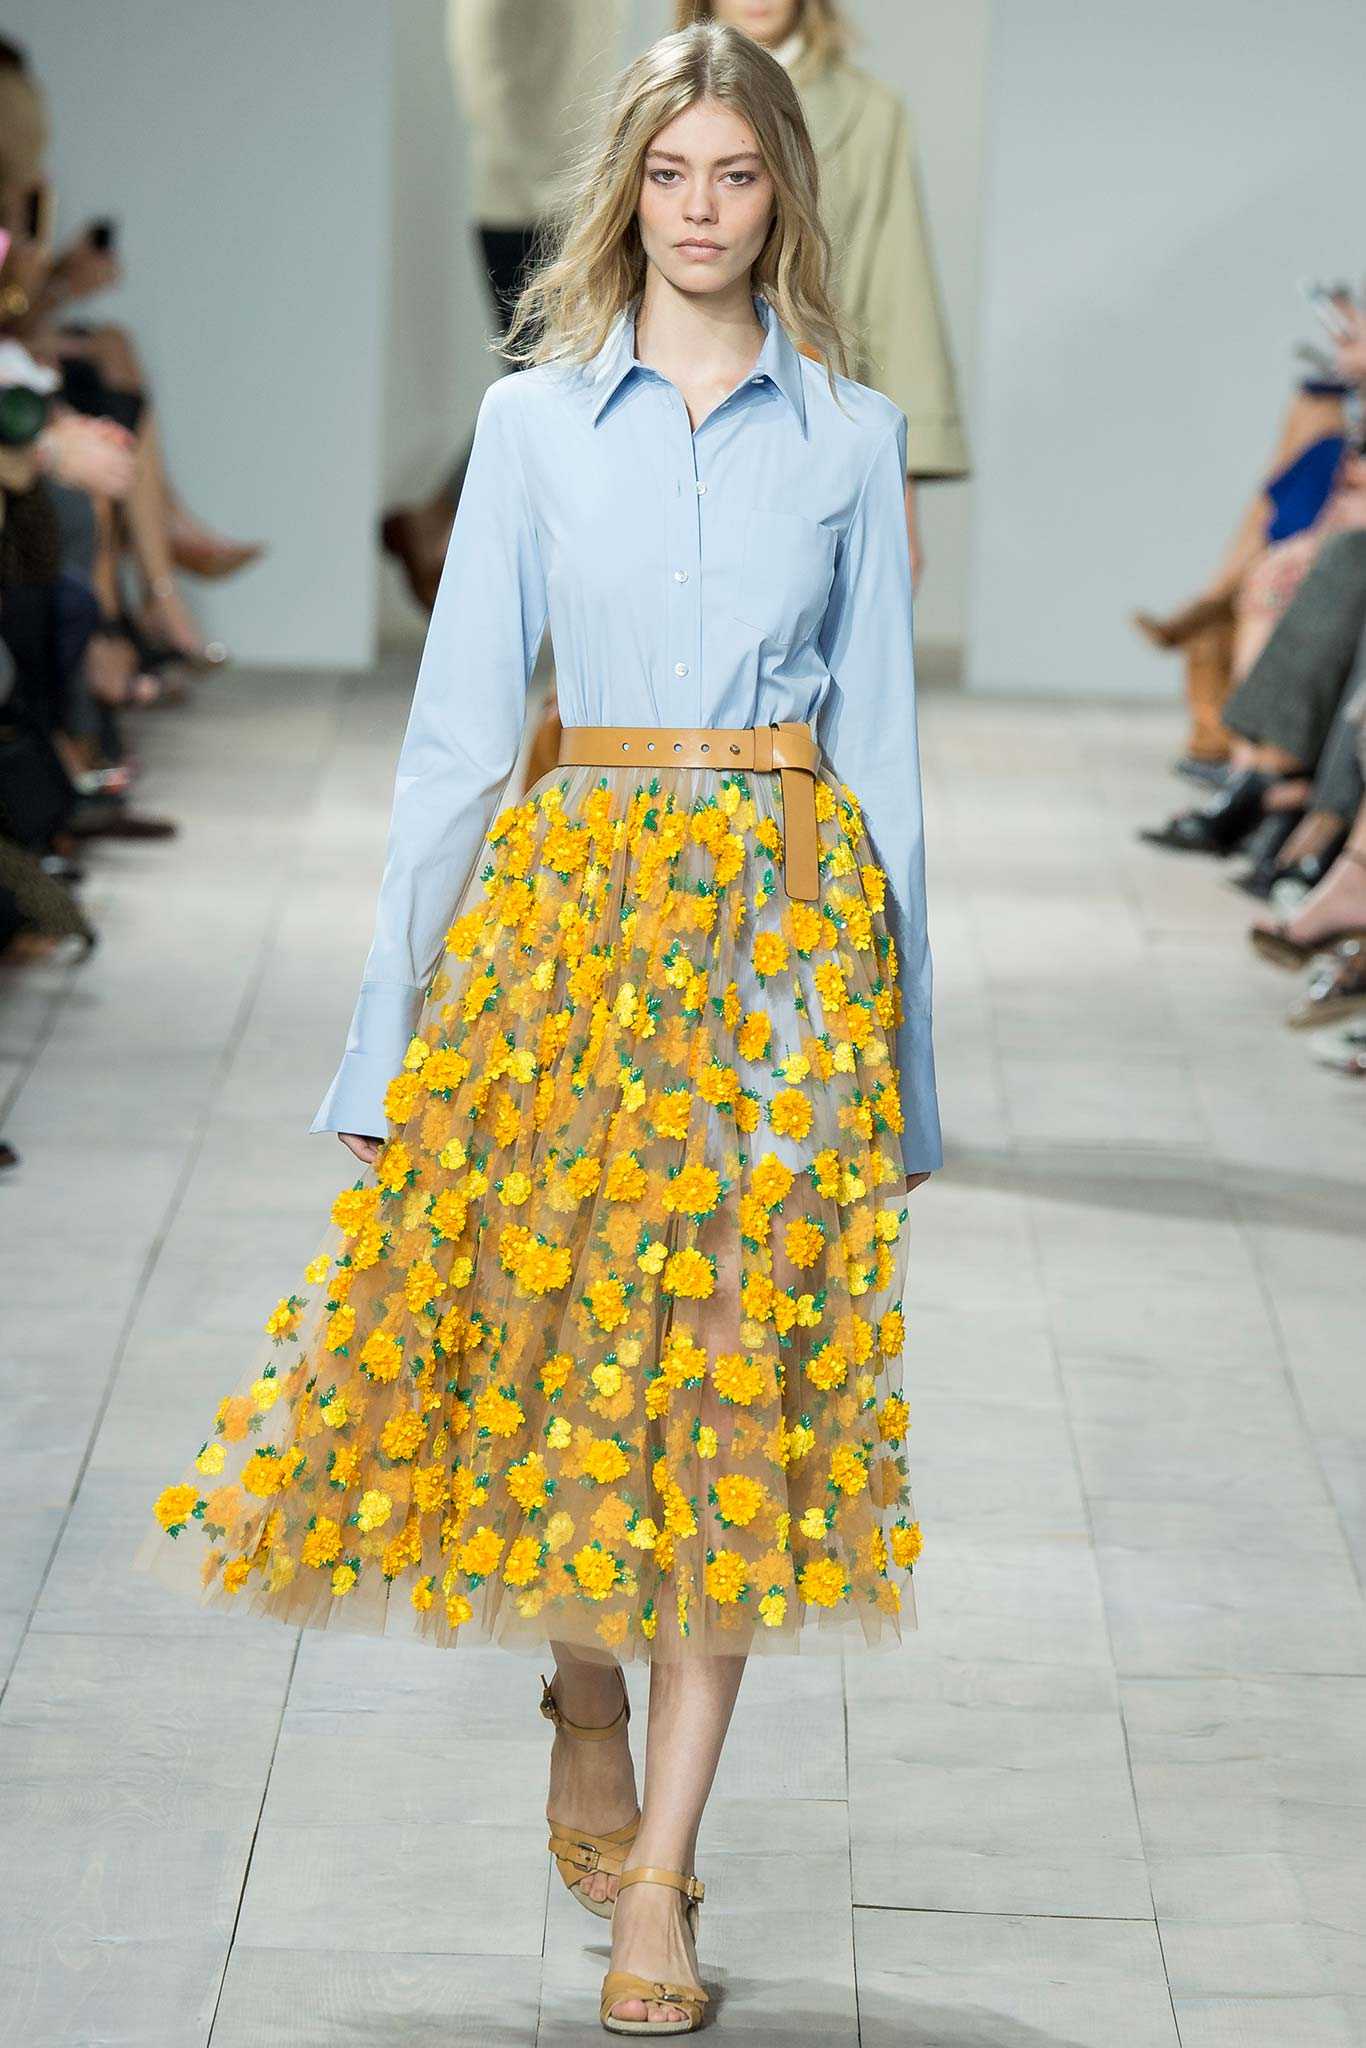 Мода 2021 года: фото в женской одежде весна-лето от эвелины хромченко (модные тенденции, тренды и новинки)